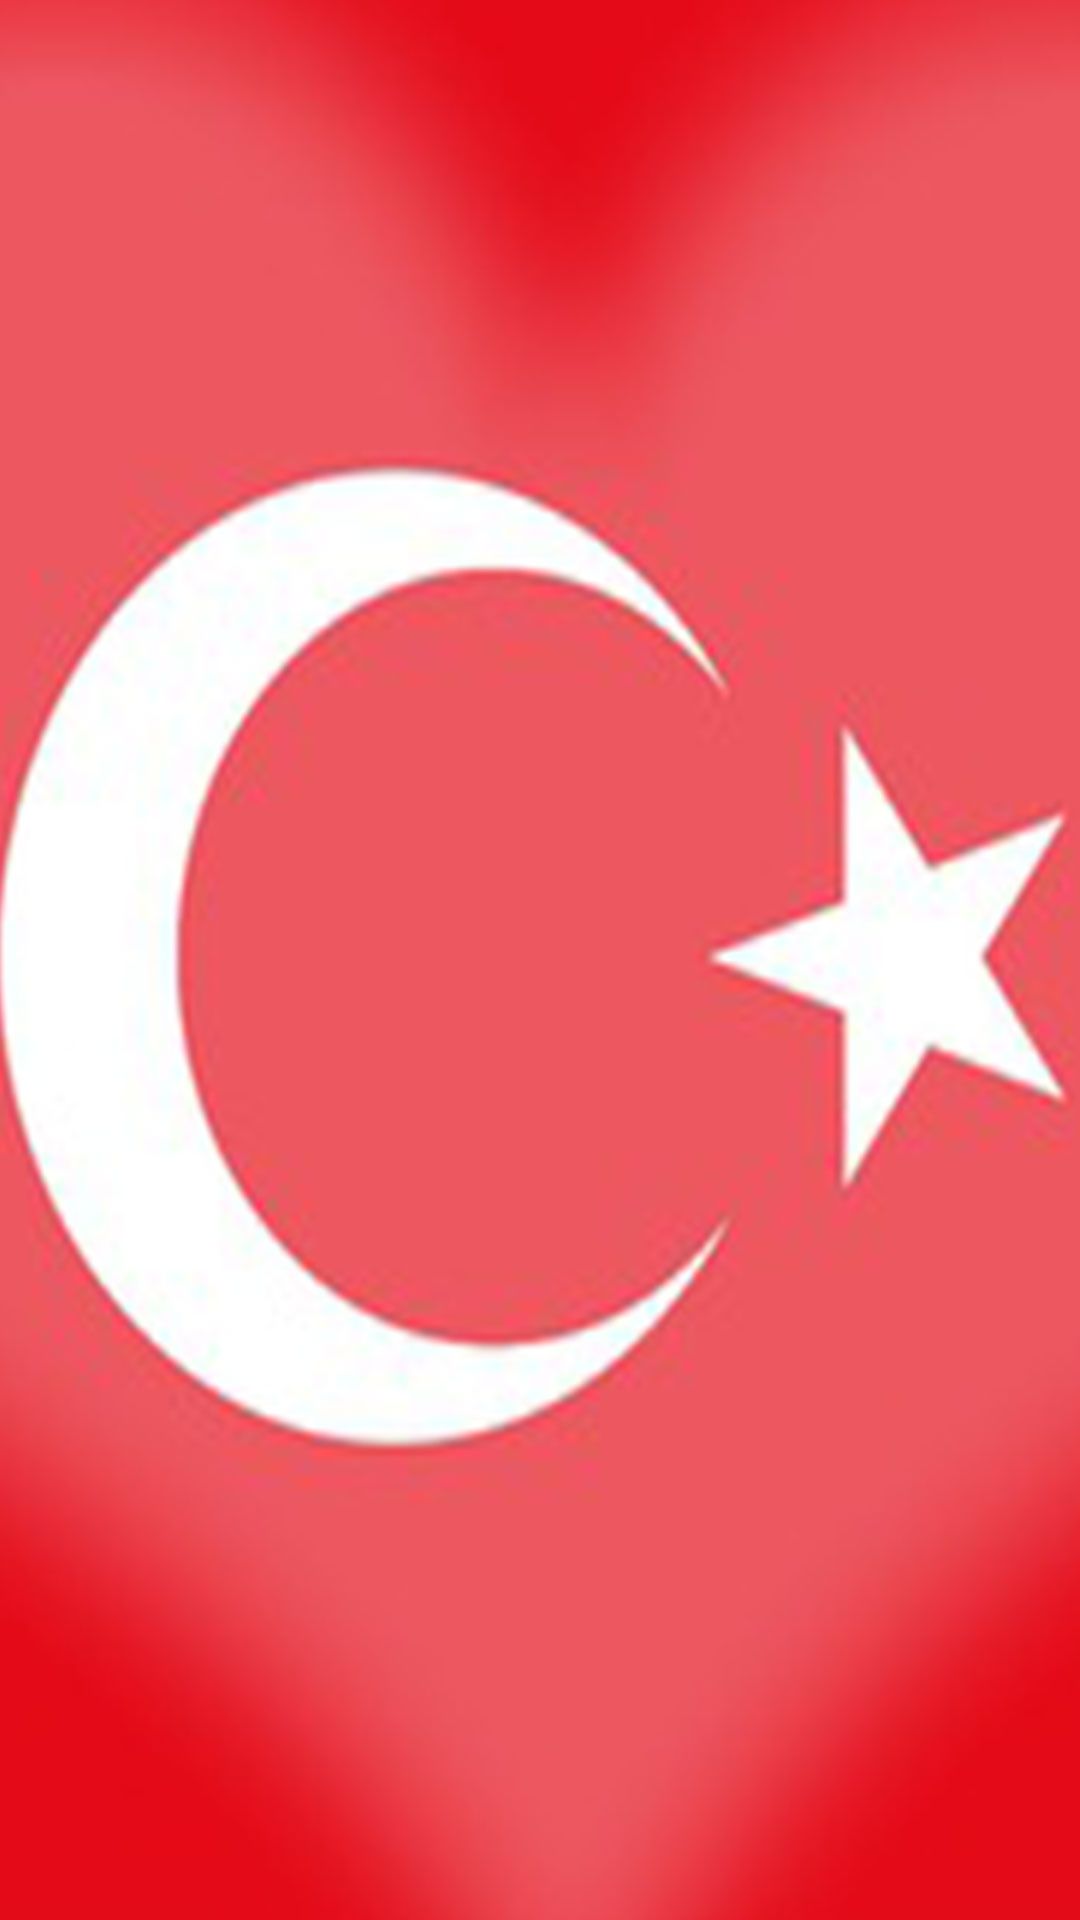 Kalpli turk bayragi 5